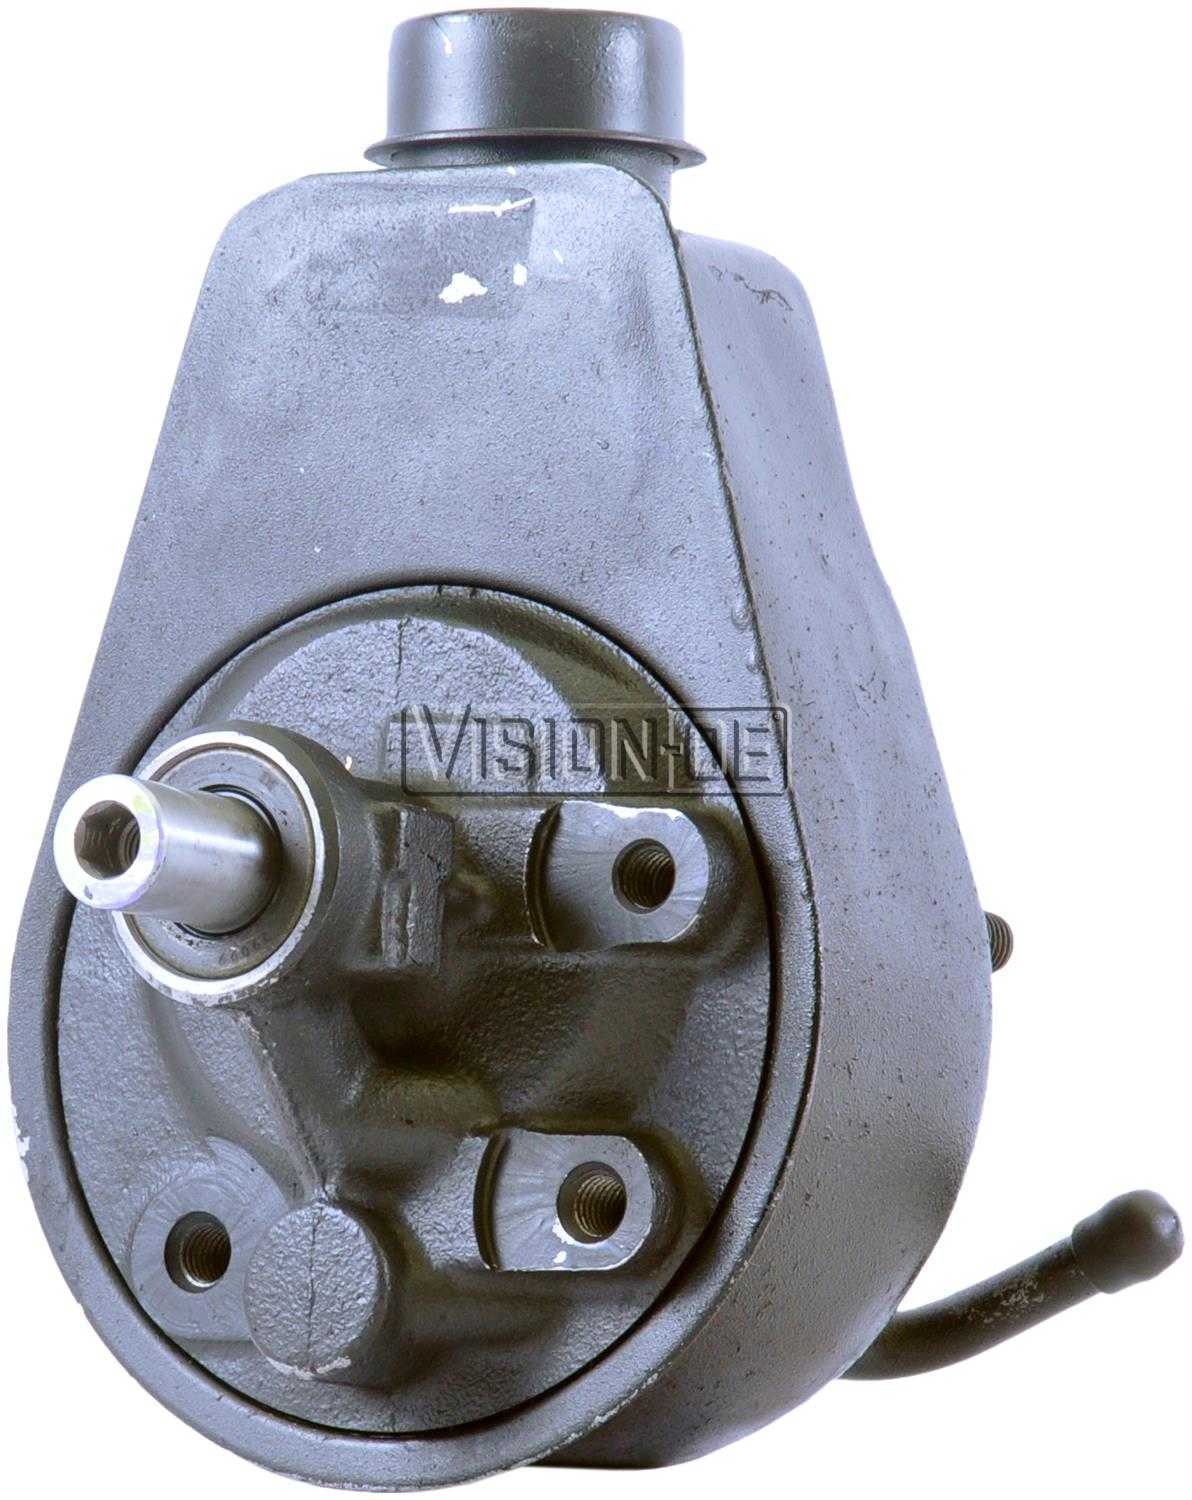 VISION-OE - Reman Power Steering Pump - VOE 731-2170